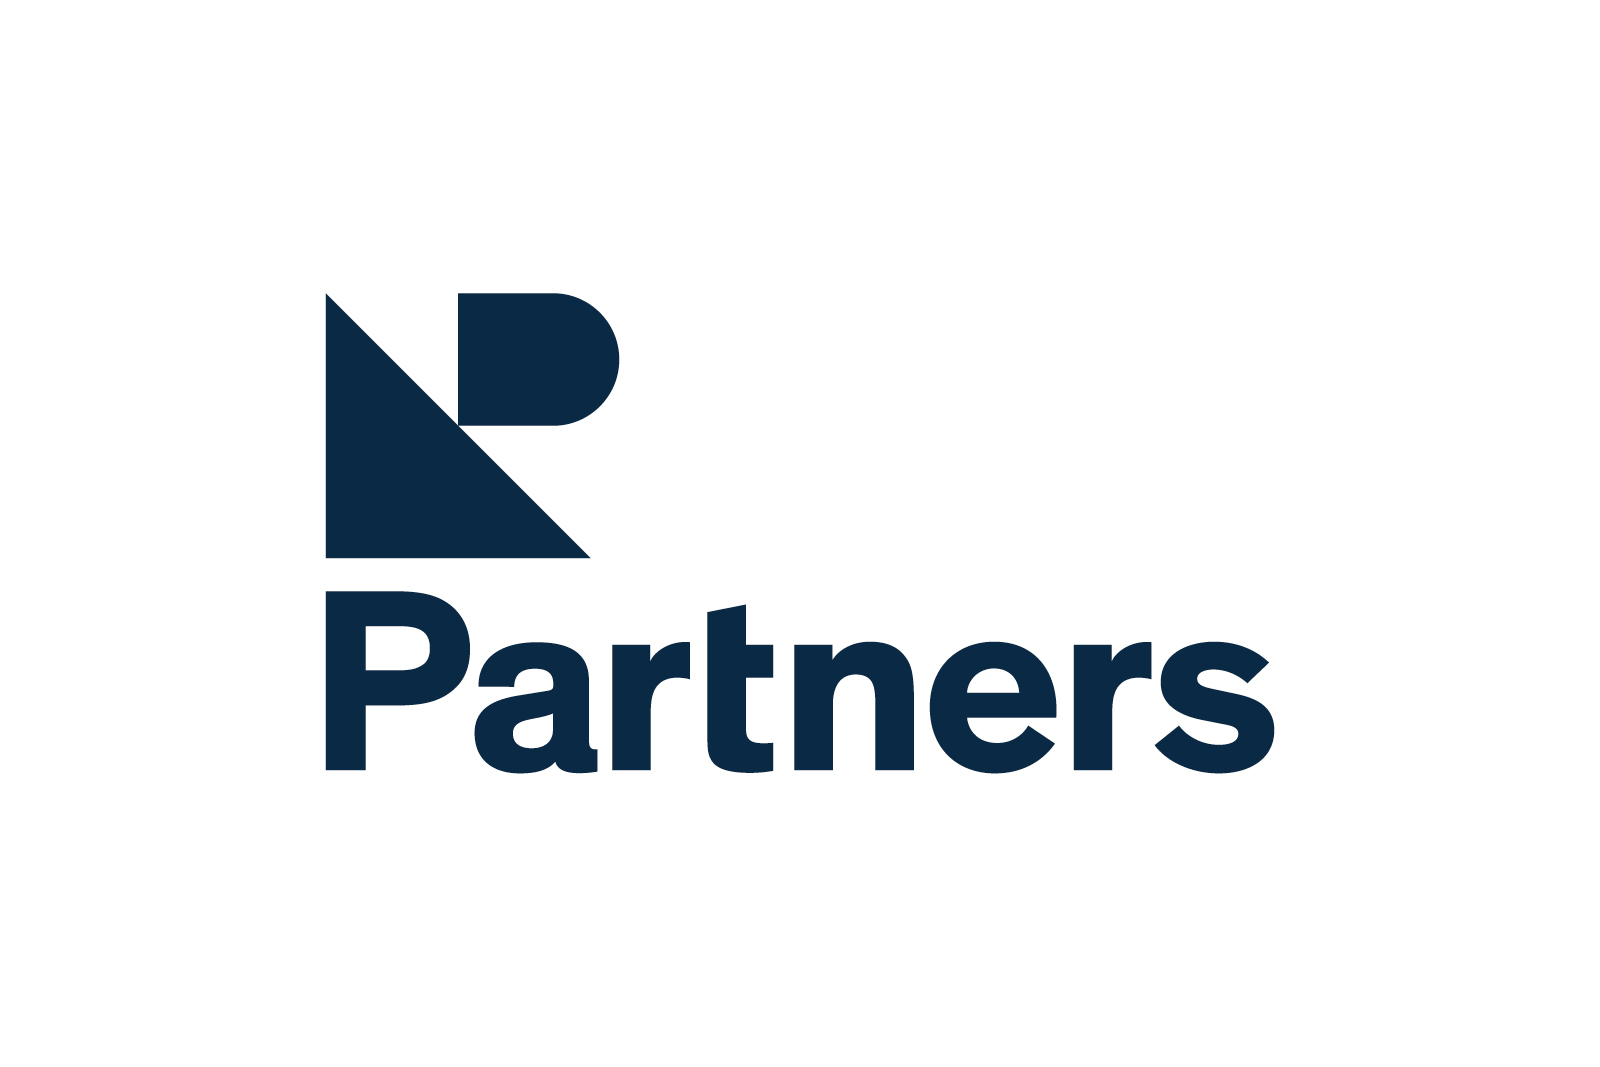 NP Partners left aligned logo